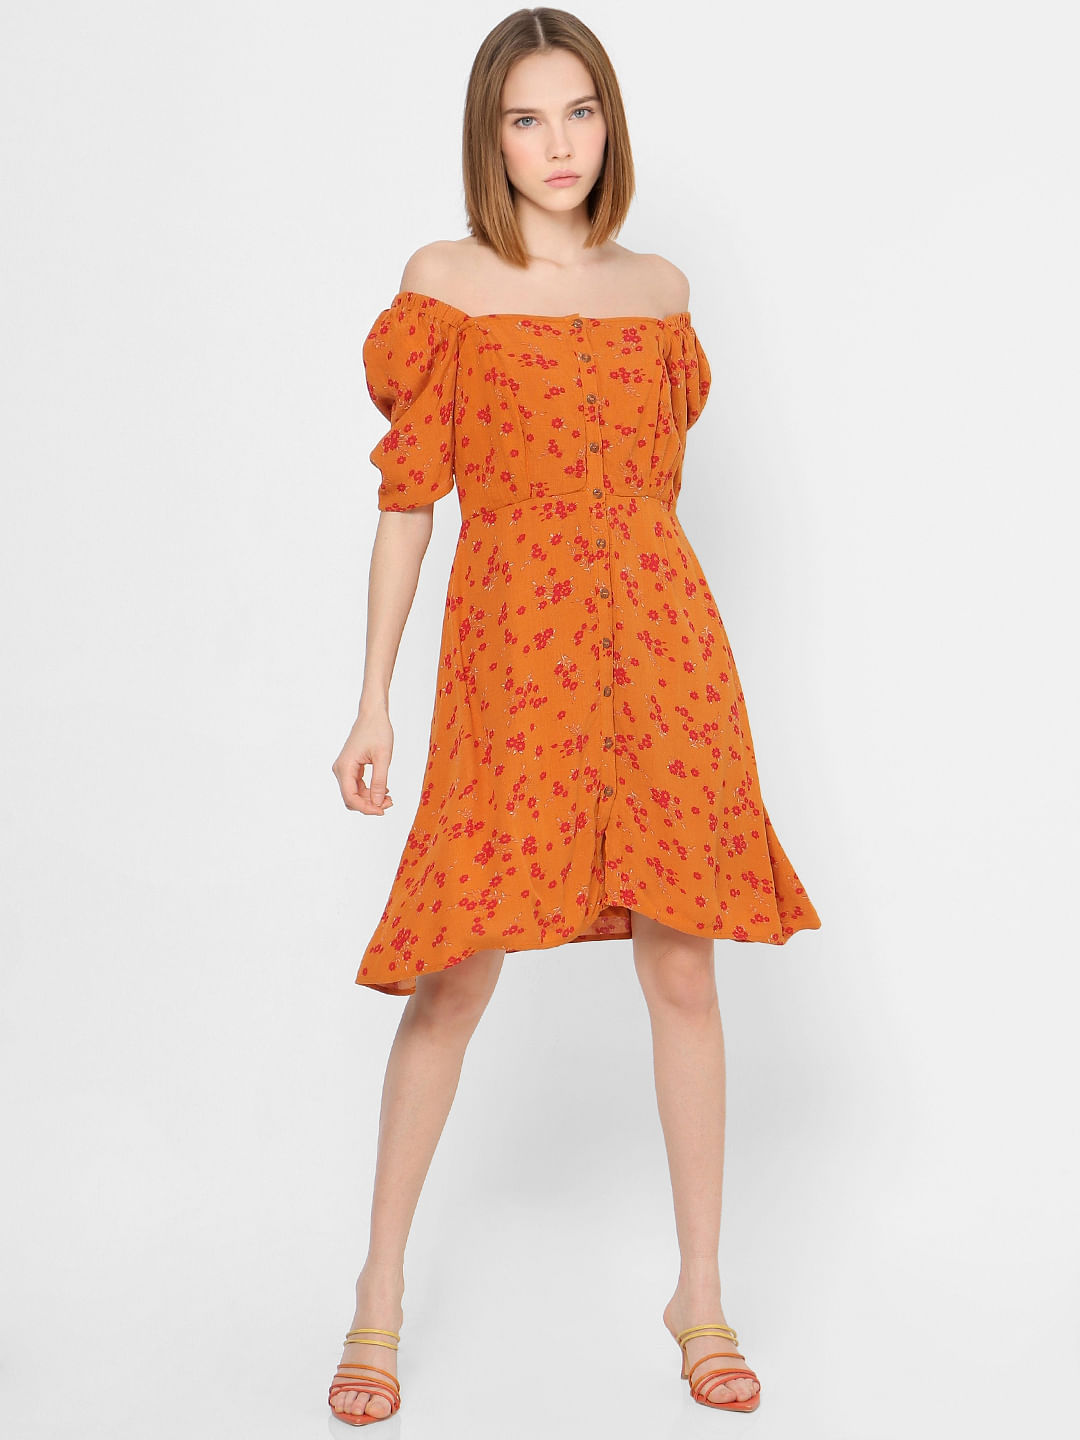 Pumpkin Coloured Summer Shift Dress for Women